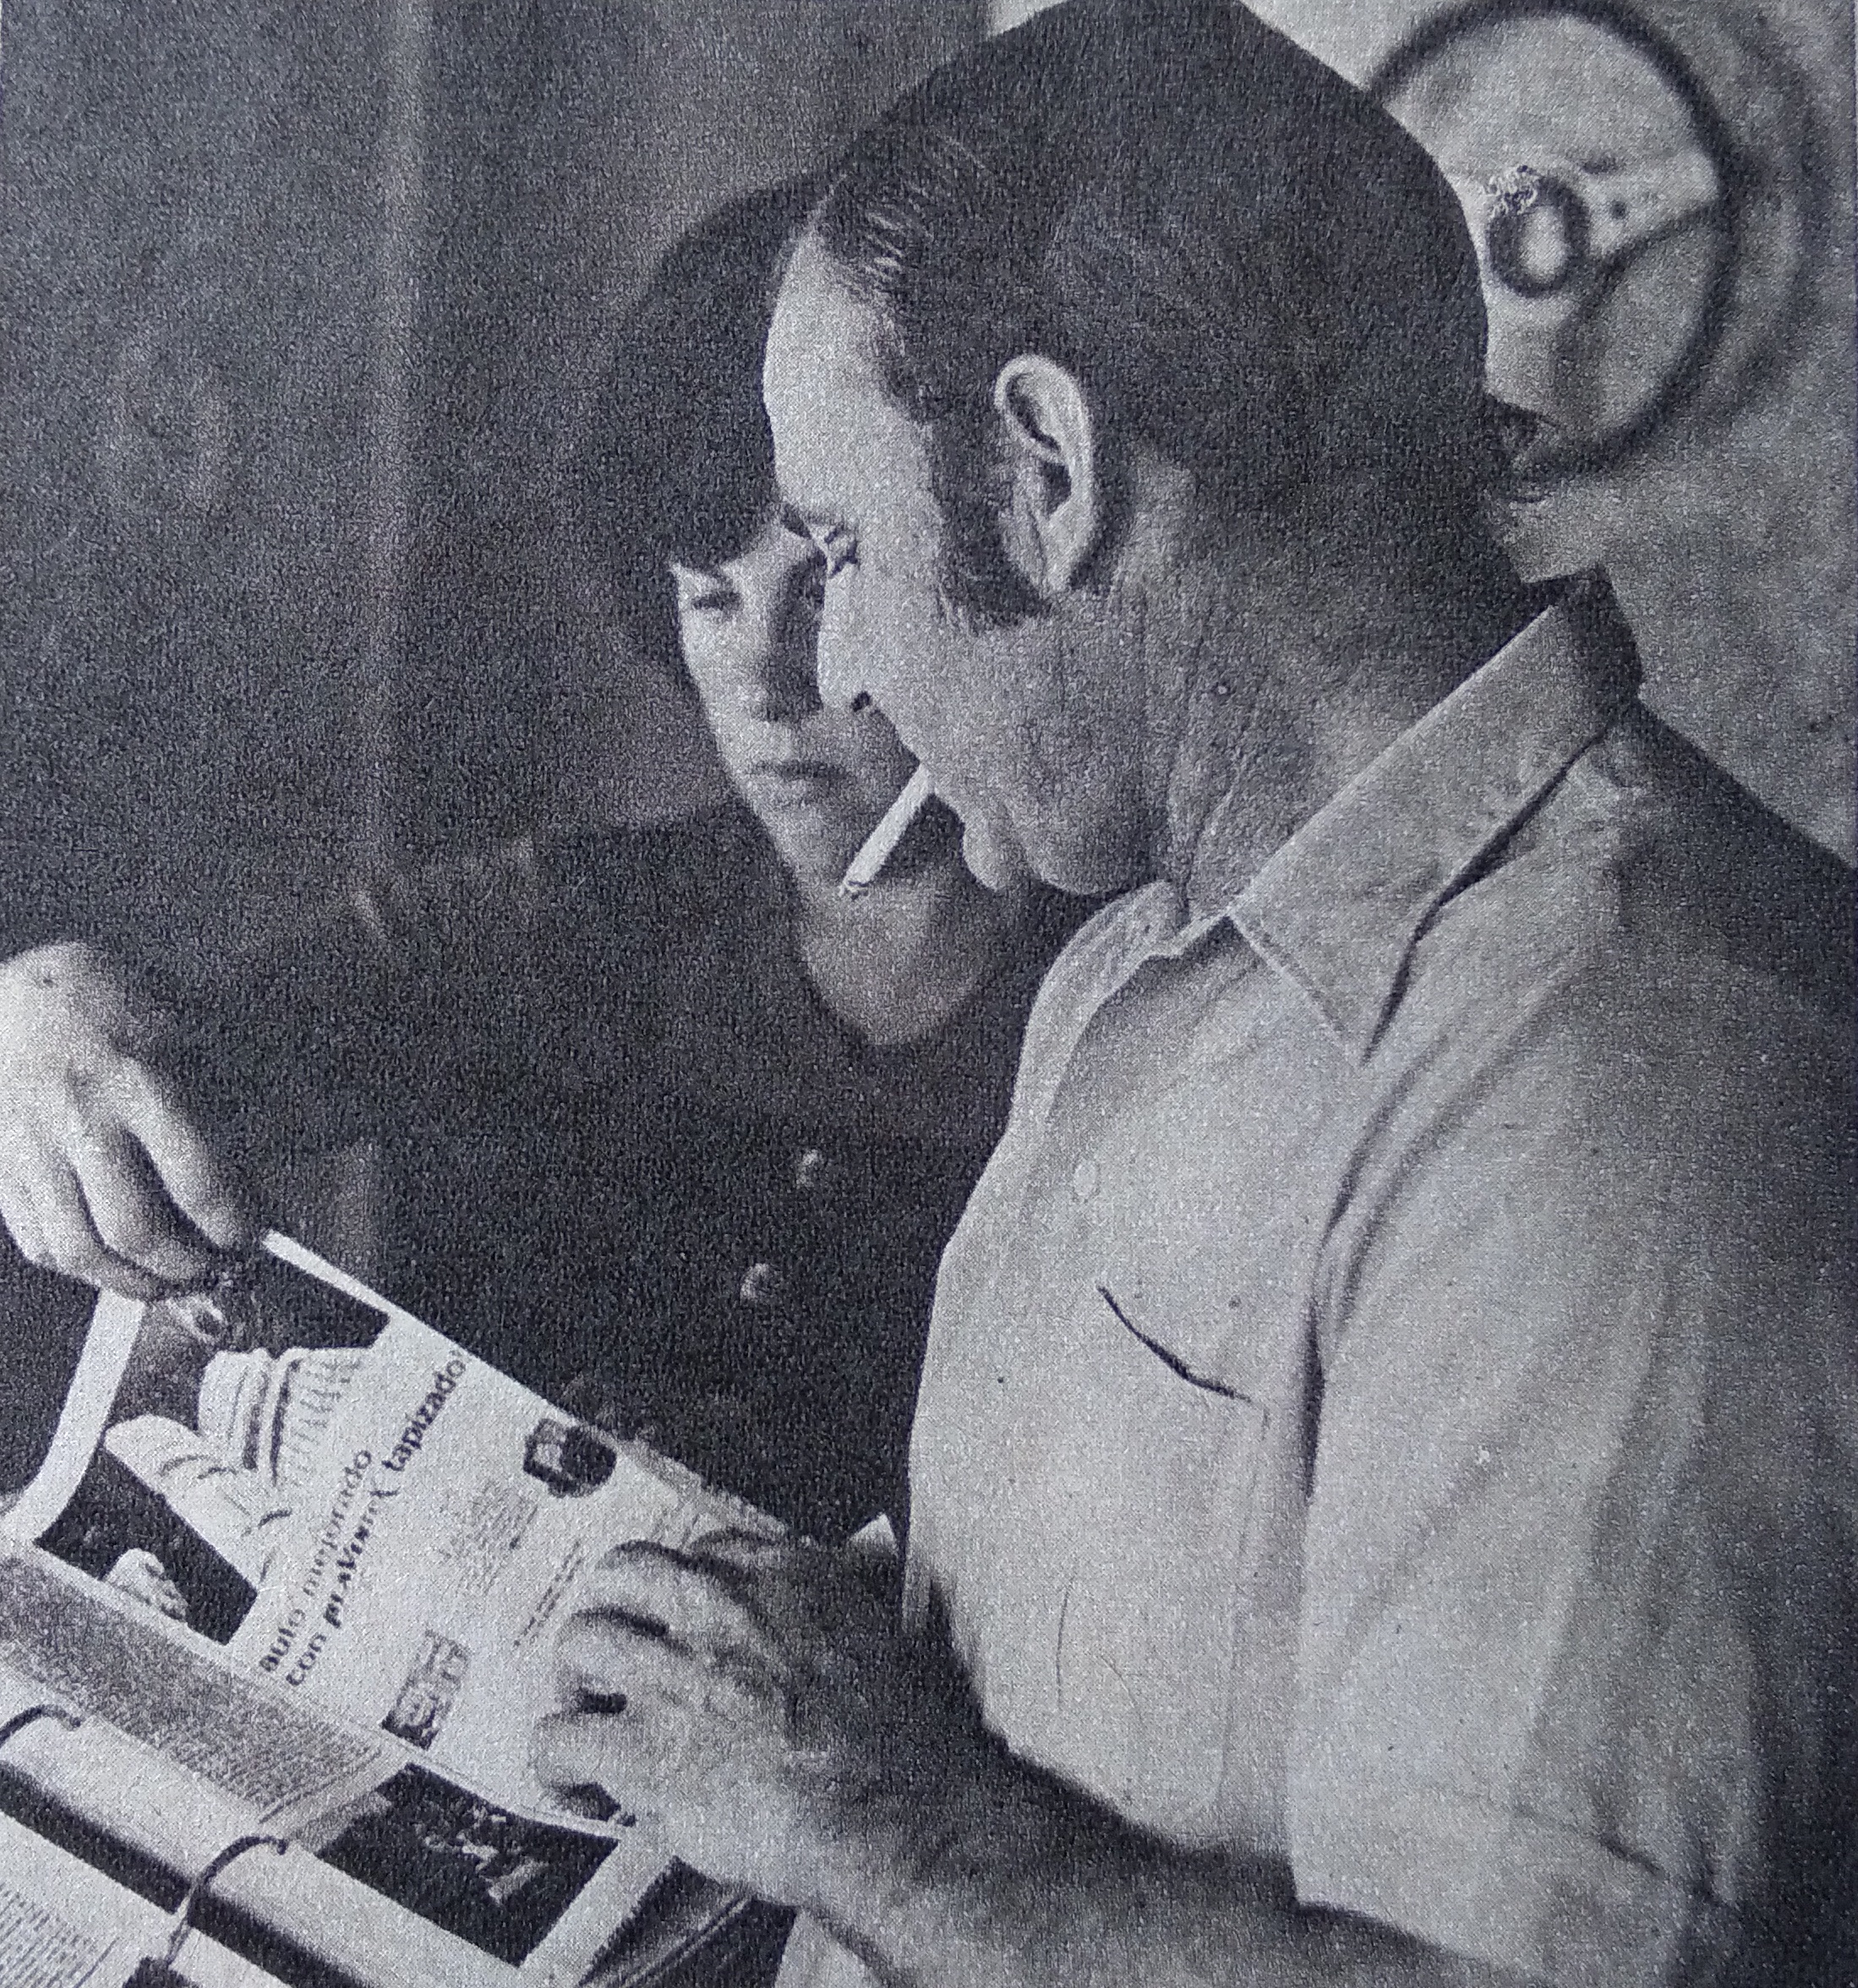 Ana María y Héctor mirando revistas a fines de los setenta (Archivo CORSA)